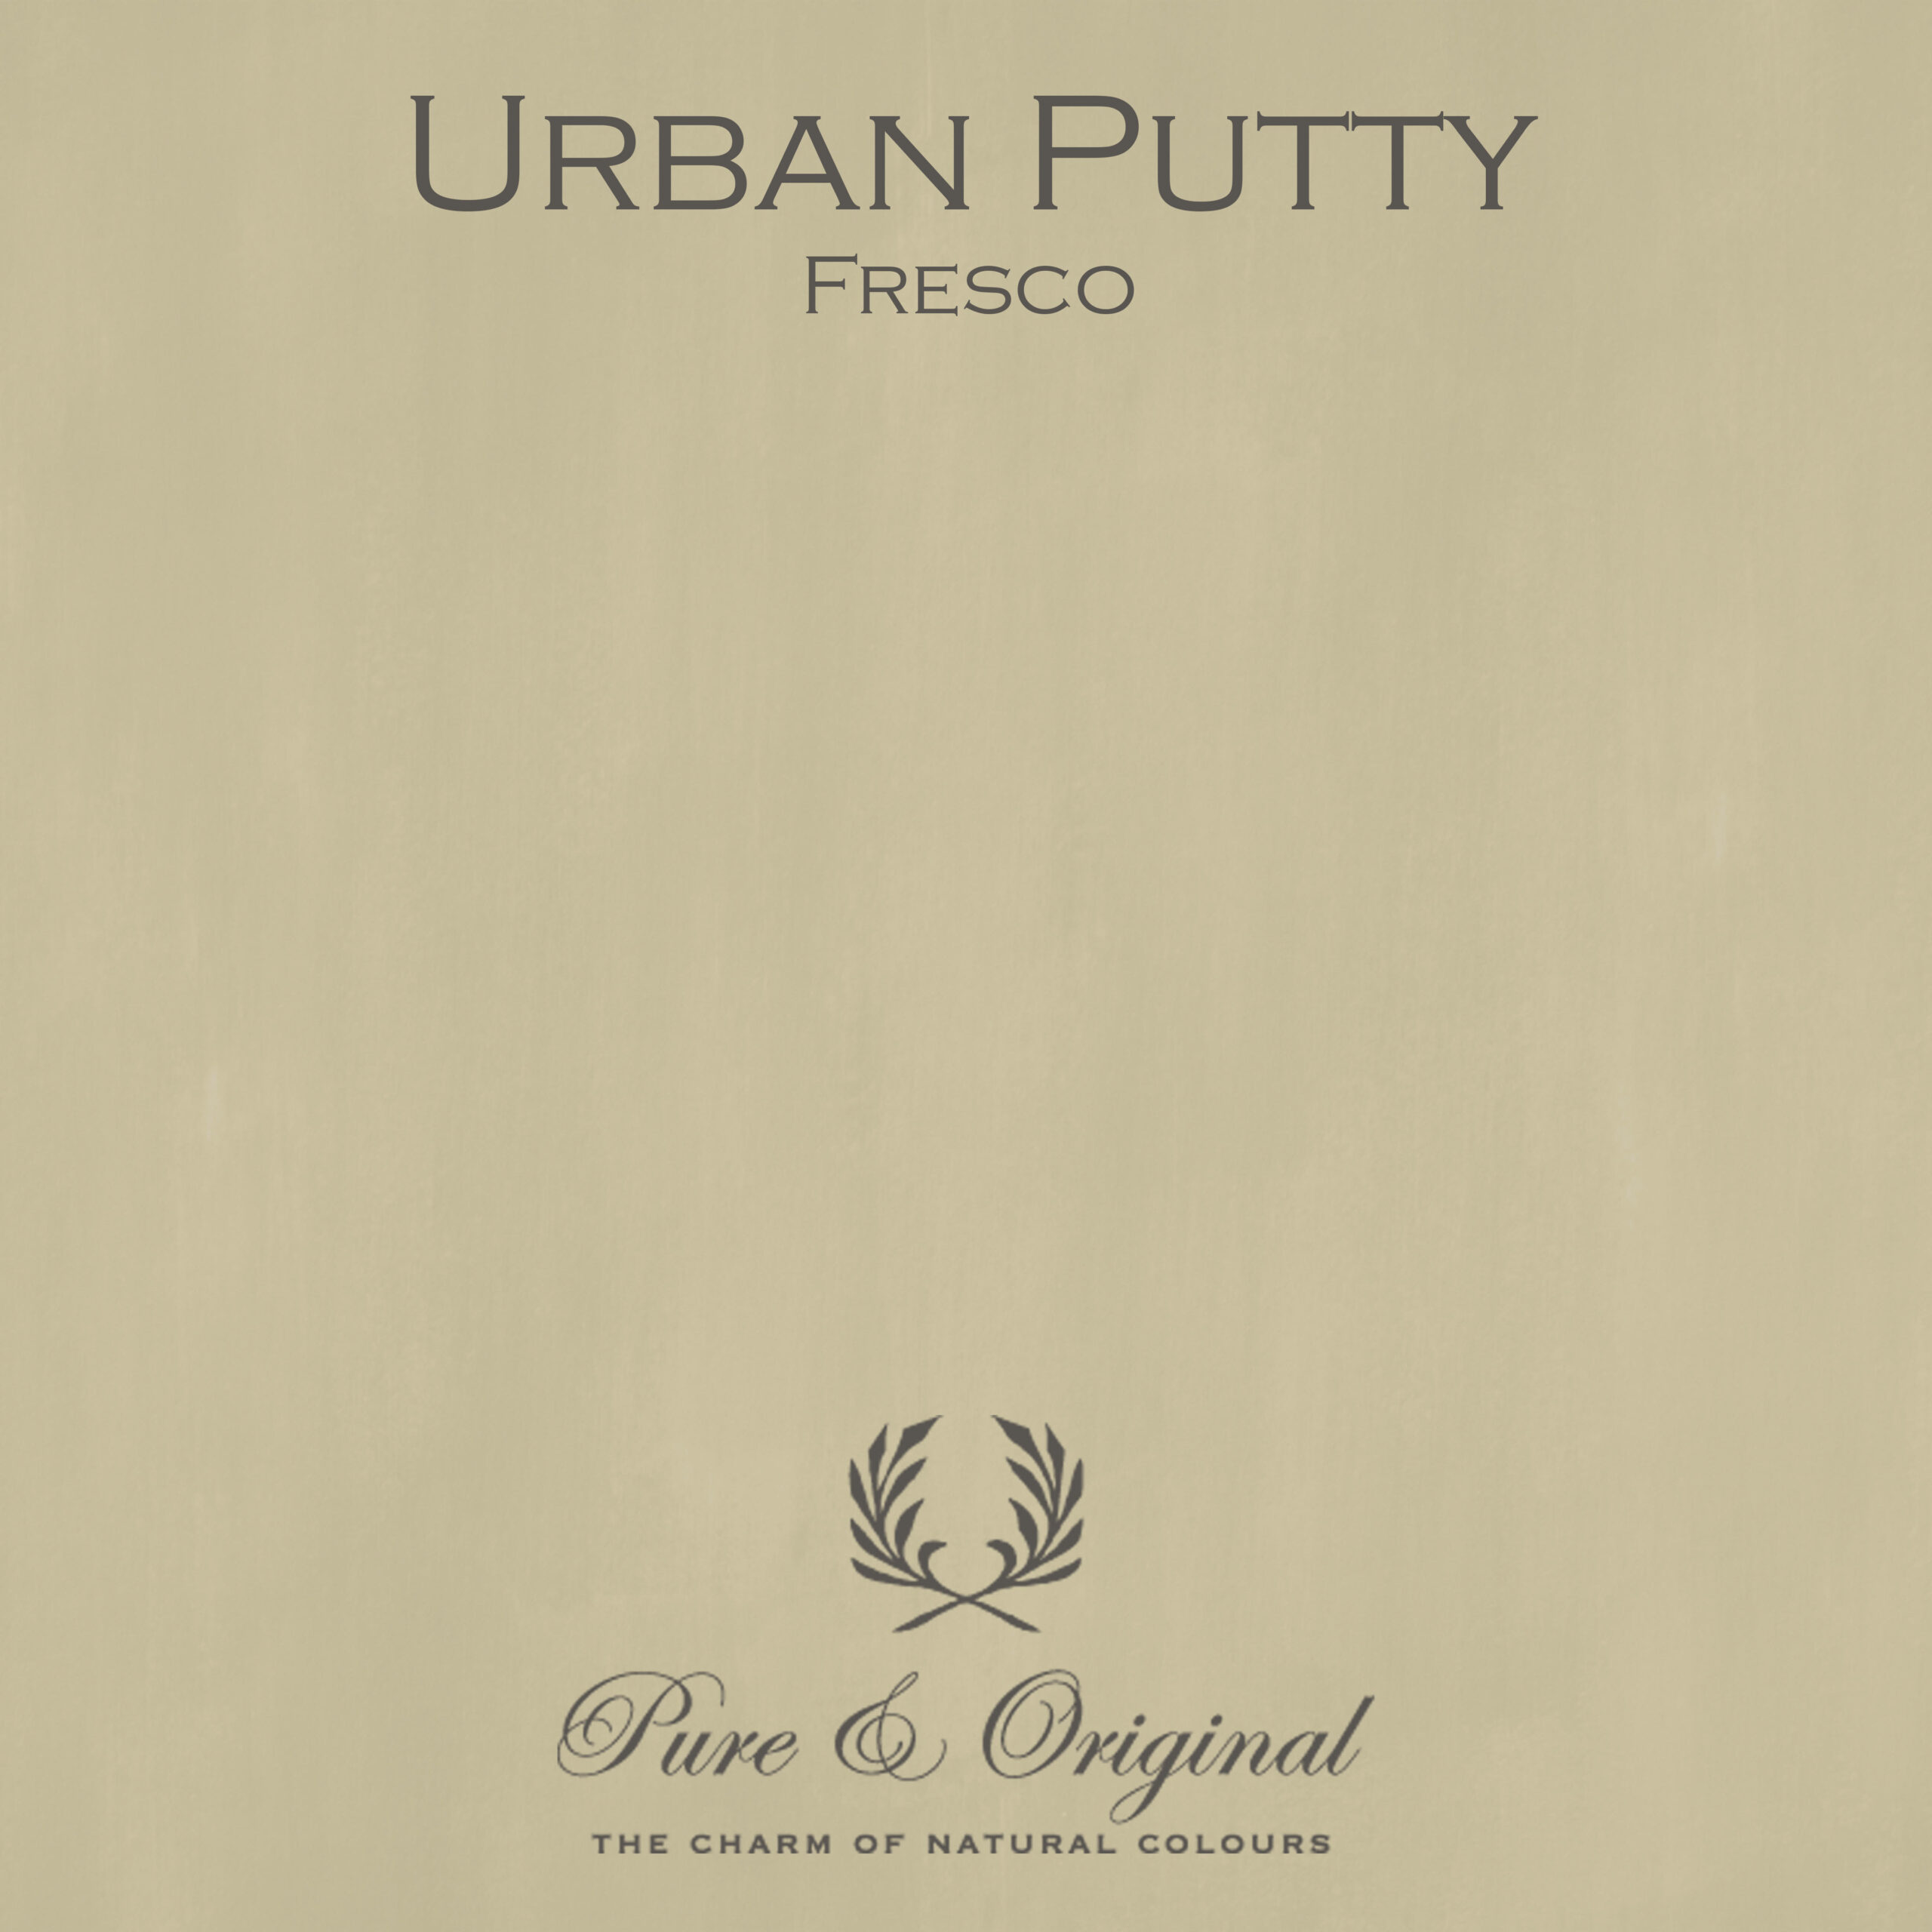 Urban Putty